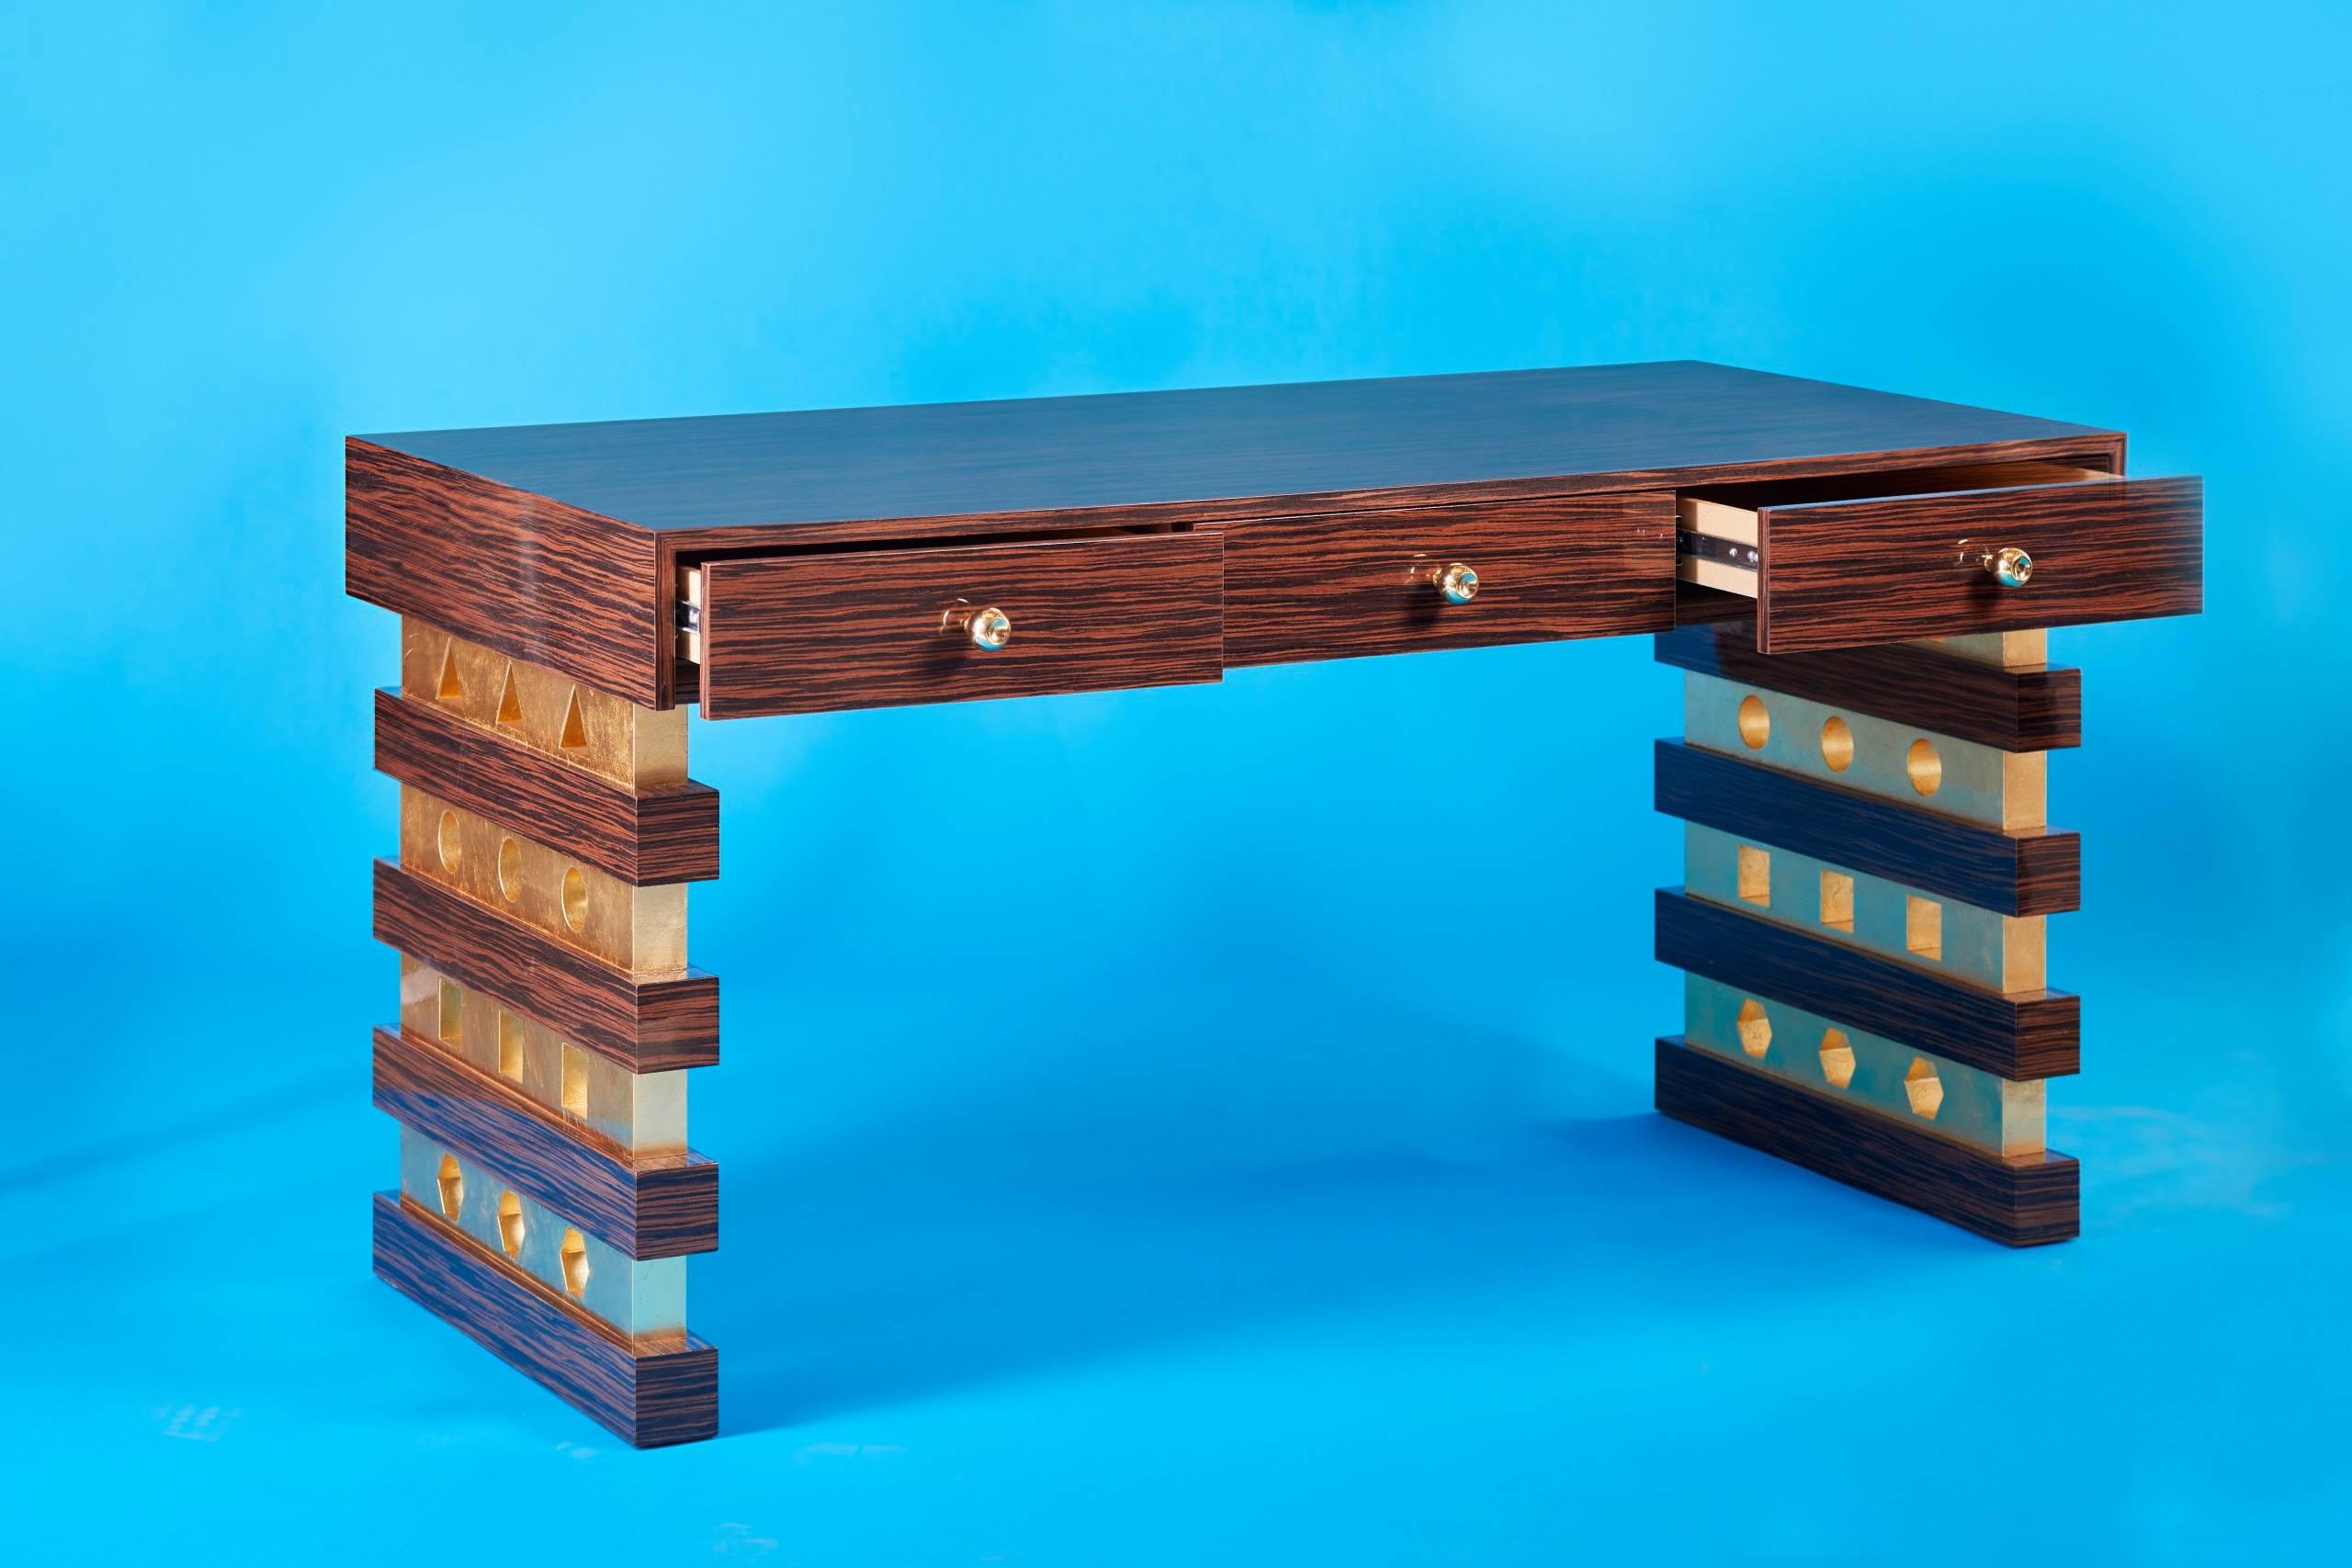 Der Shape Shifter Desk ist ein wunderschöner, handgefertigter Schreibtisch im zeitgenössischen Art-Déco-Stil.  Die Messingknöpfe wurden individuell angefertigt und auf Hochglanz poliert. Die Beine des Schreibtisches wurden mit Blattgold verziert, um